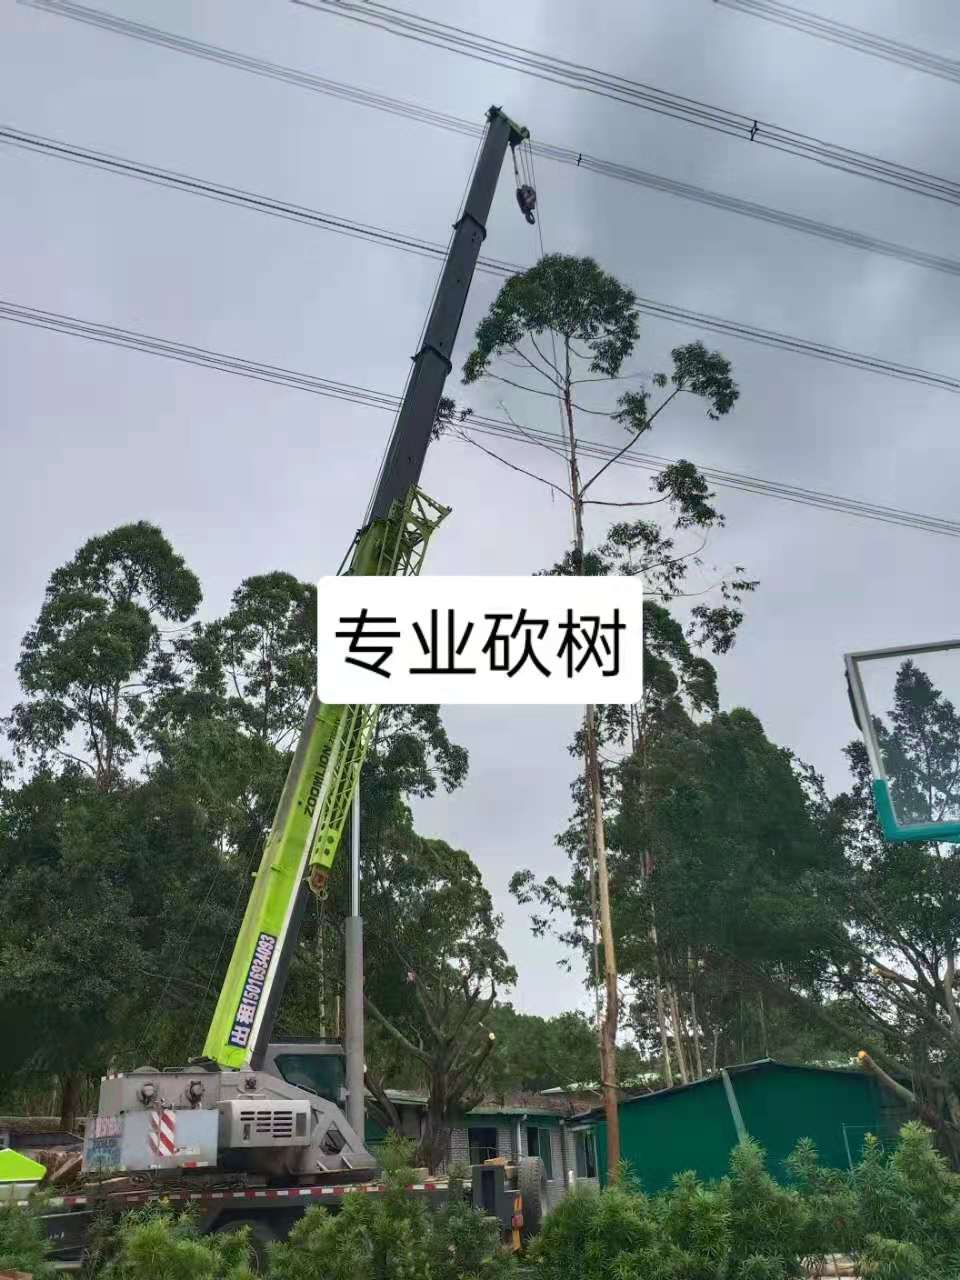 广州南城砍树修树伐树树叶清运工程队伍电话  广州砍树价格